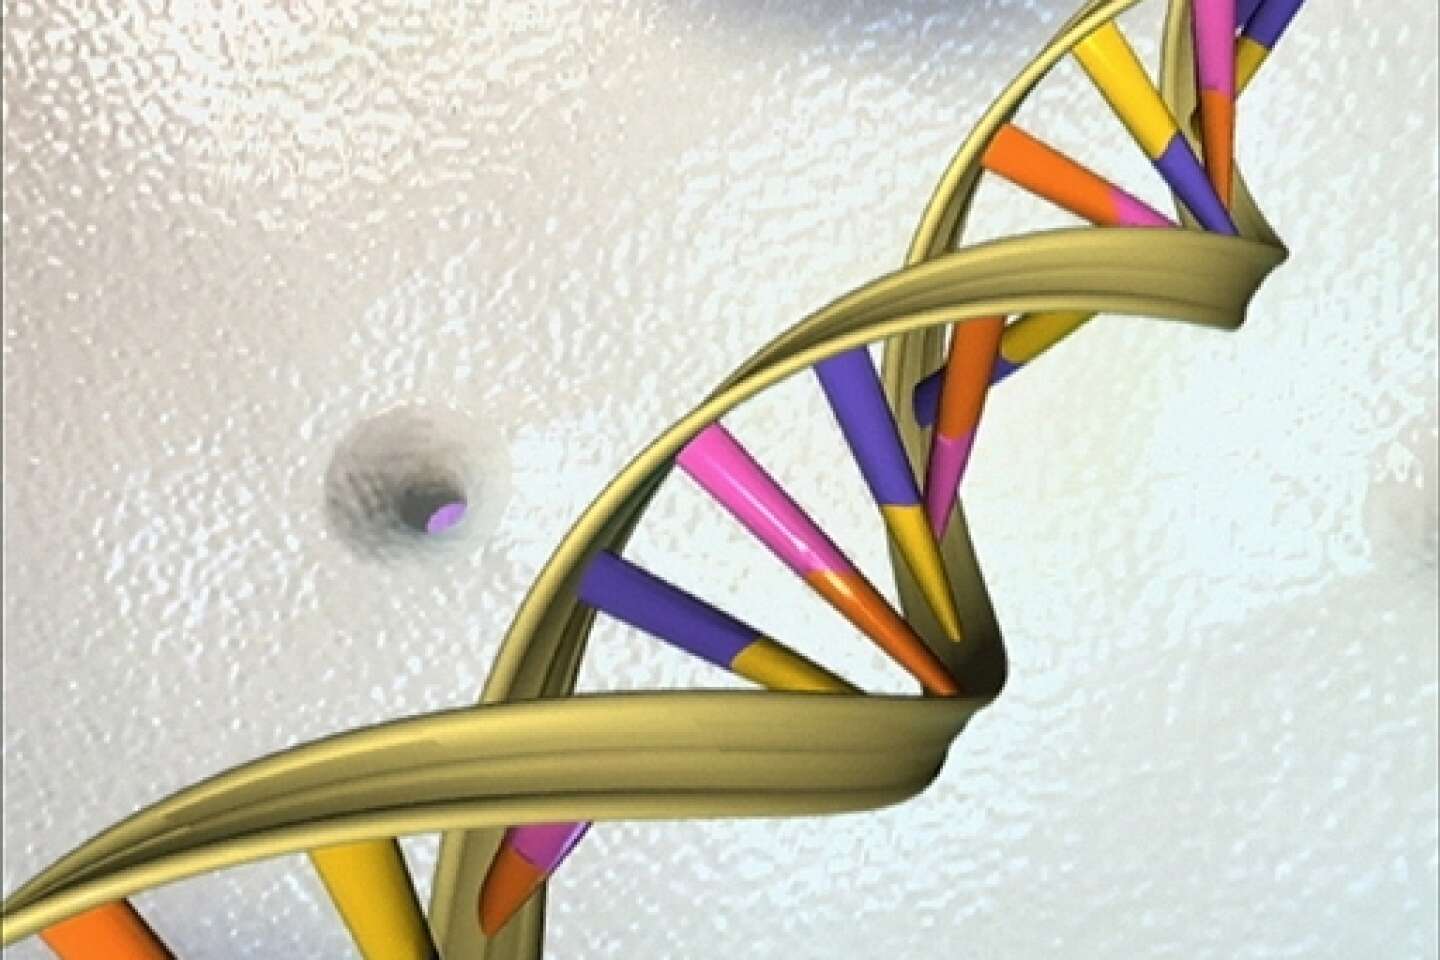 Etats-Unis : les tests génétiques innocentent un homme - Sciences